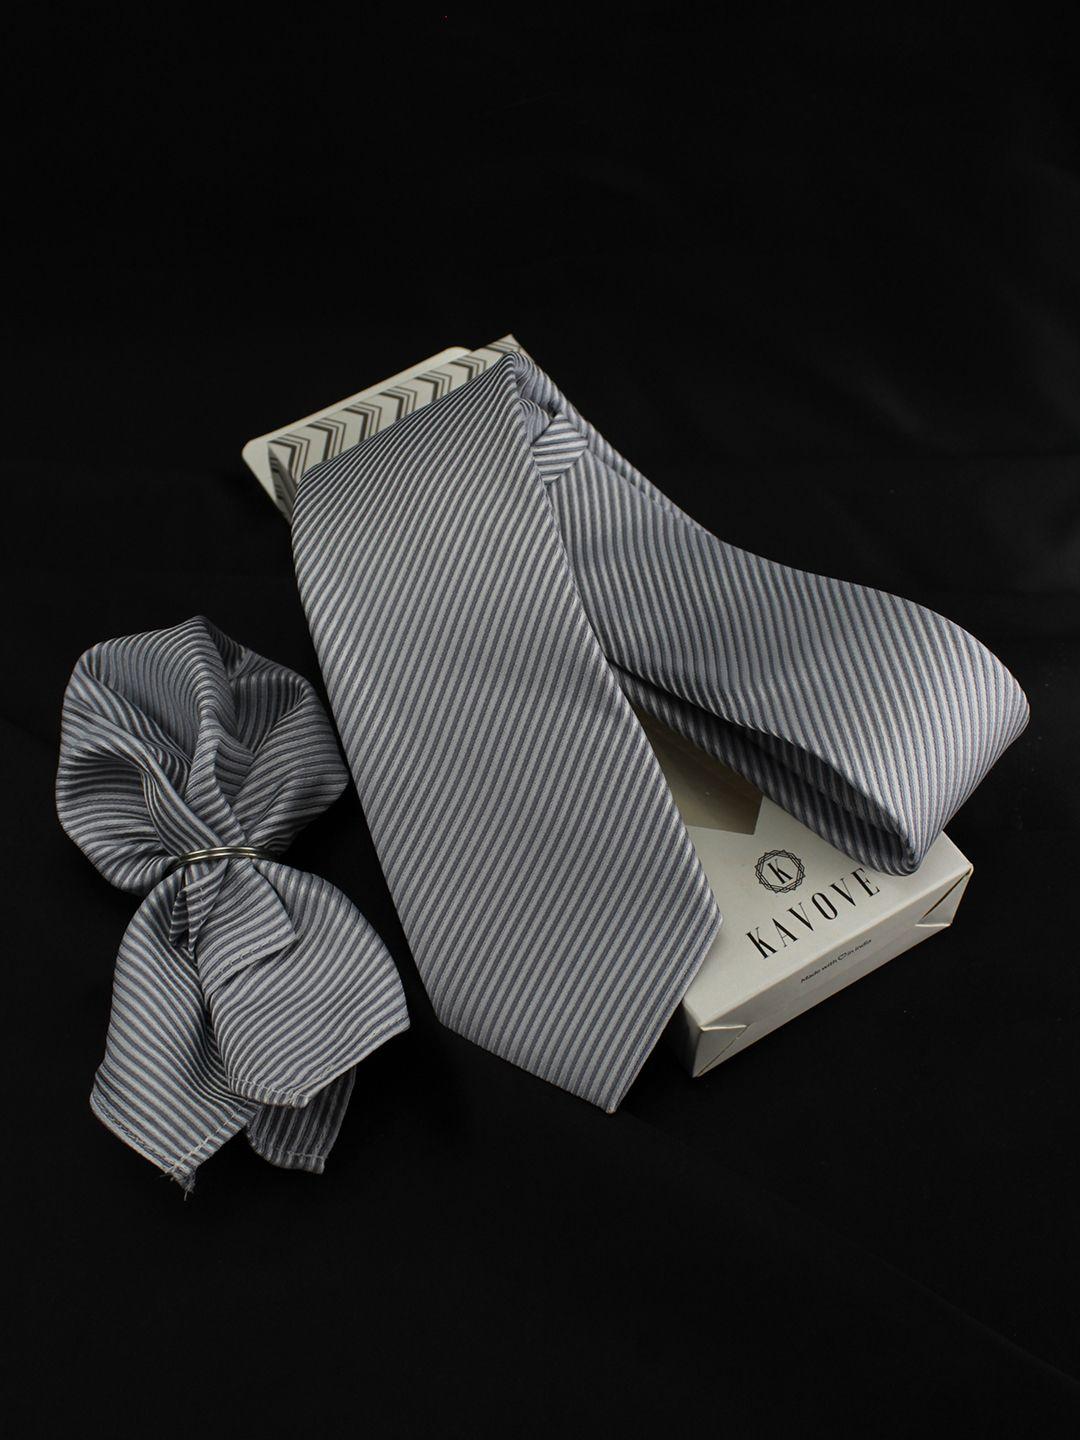 kovove men silver-toned striped accessory gift set